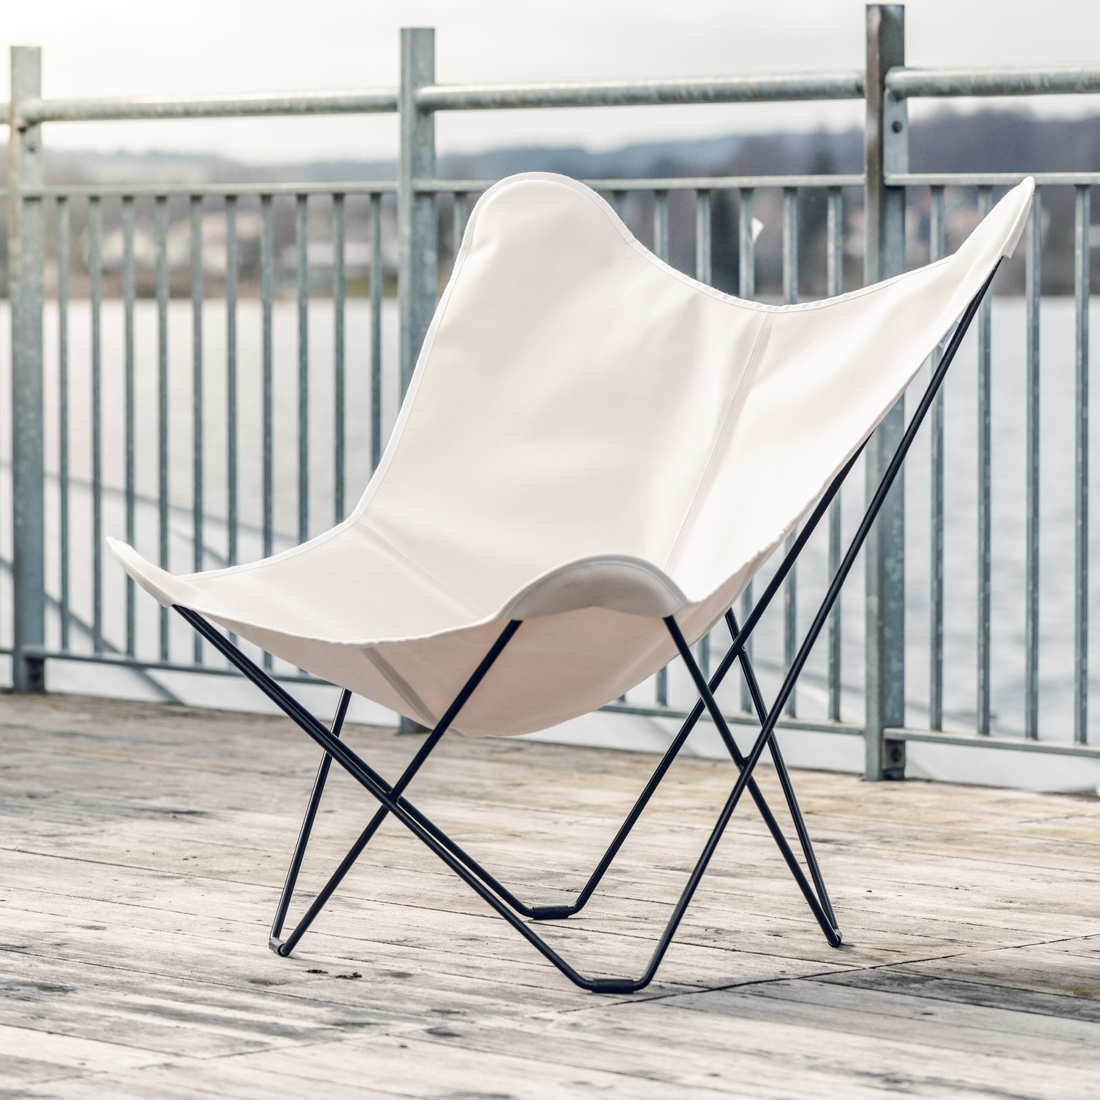 CUERODESIGN Outdoorsessel Sunshine Mariposa Natural Plus mit schwarzem Stahlgestell und Sunbrella-Textil